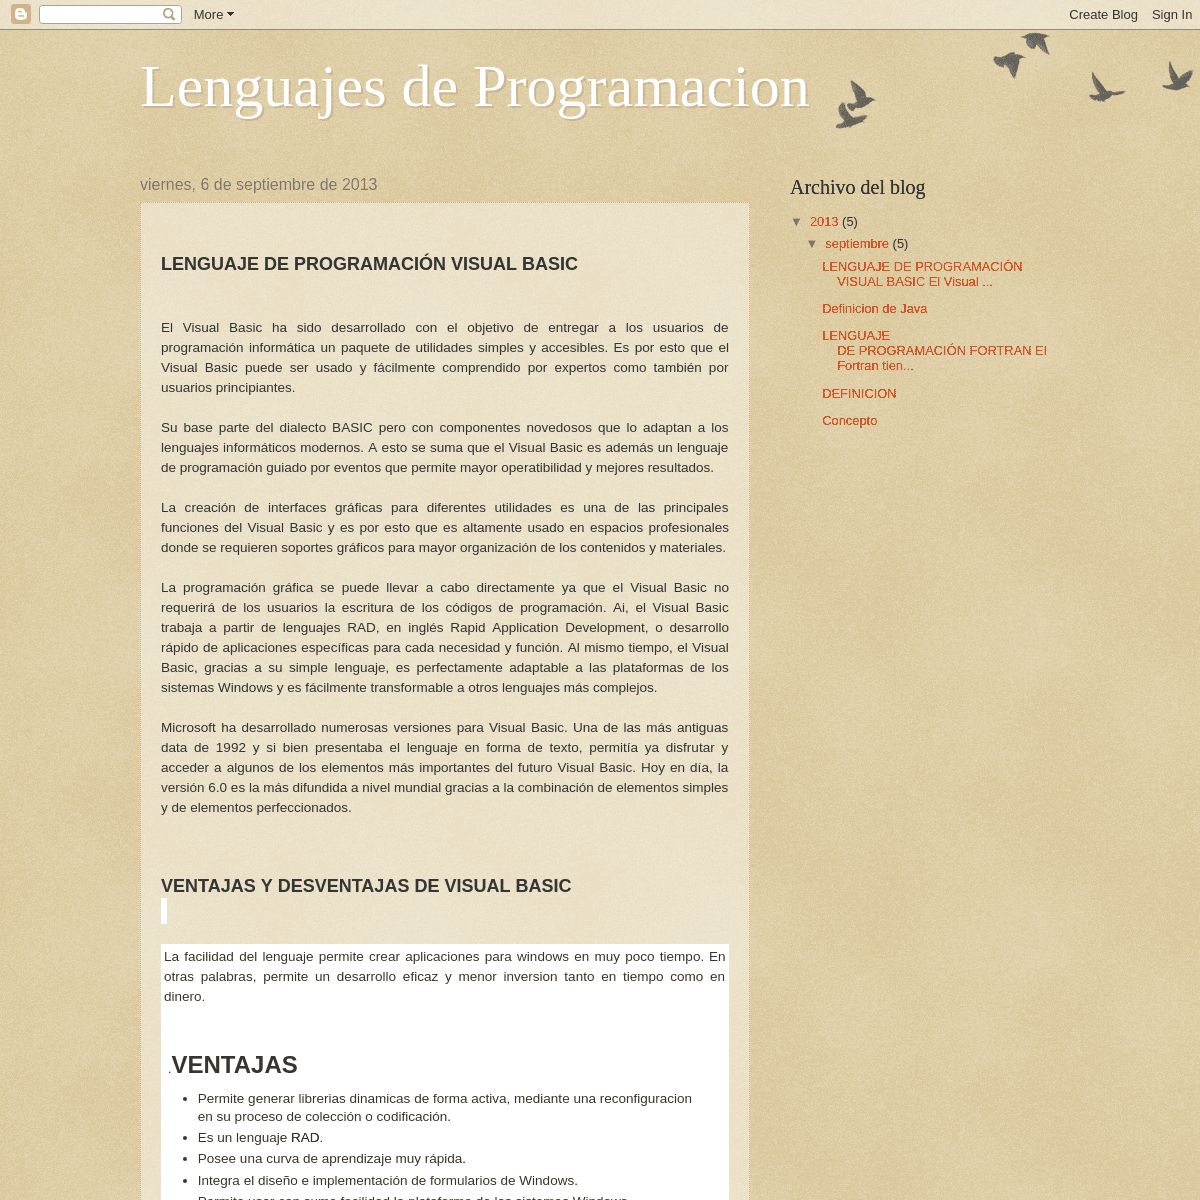 A complete backup of lenguajesana.blogspot.com